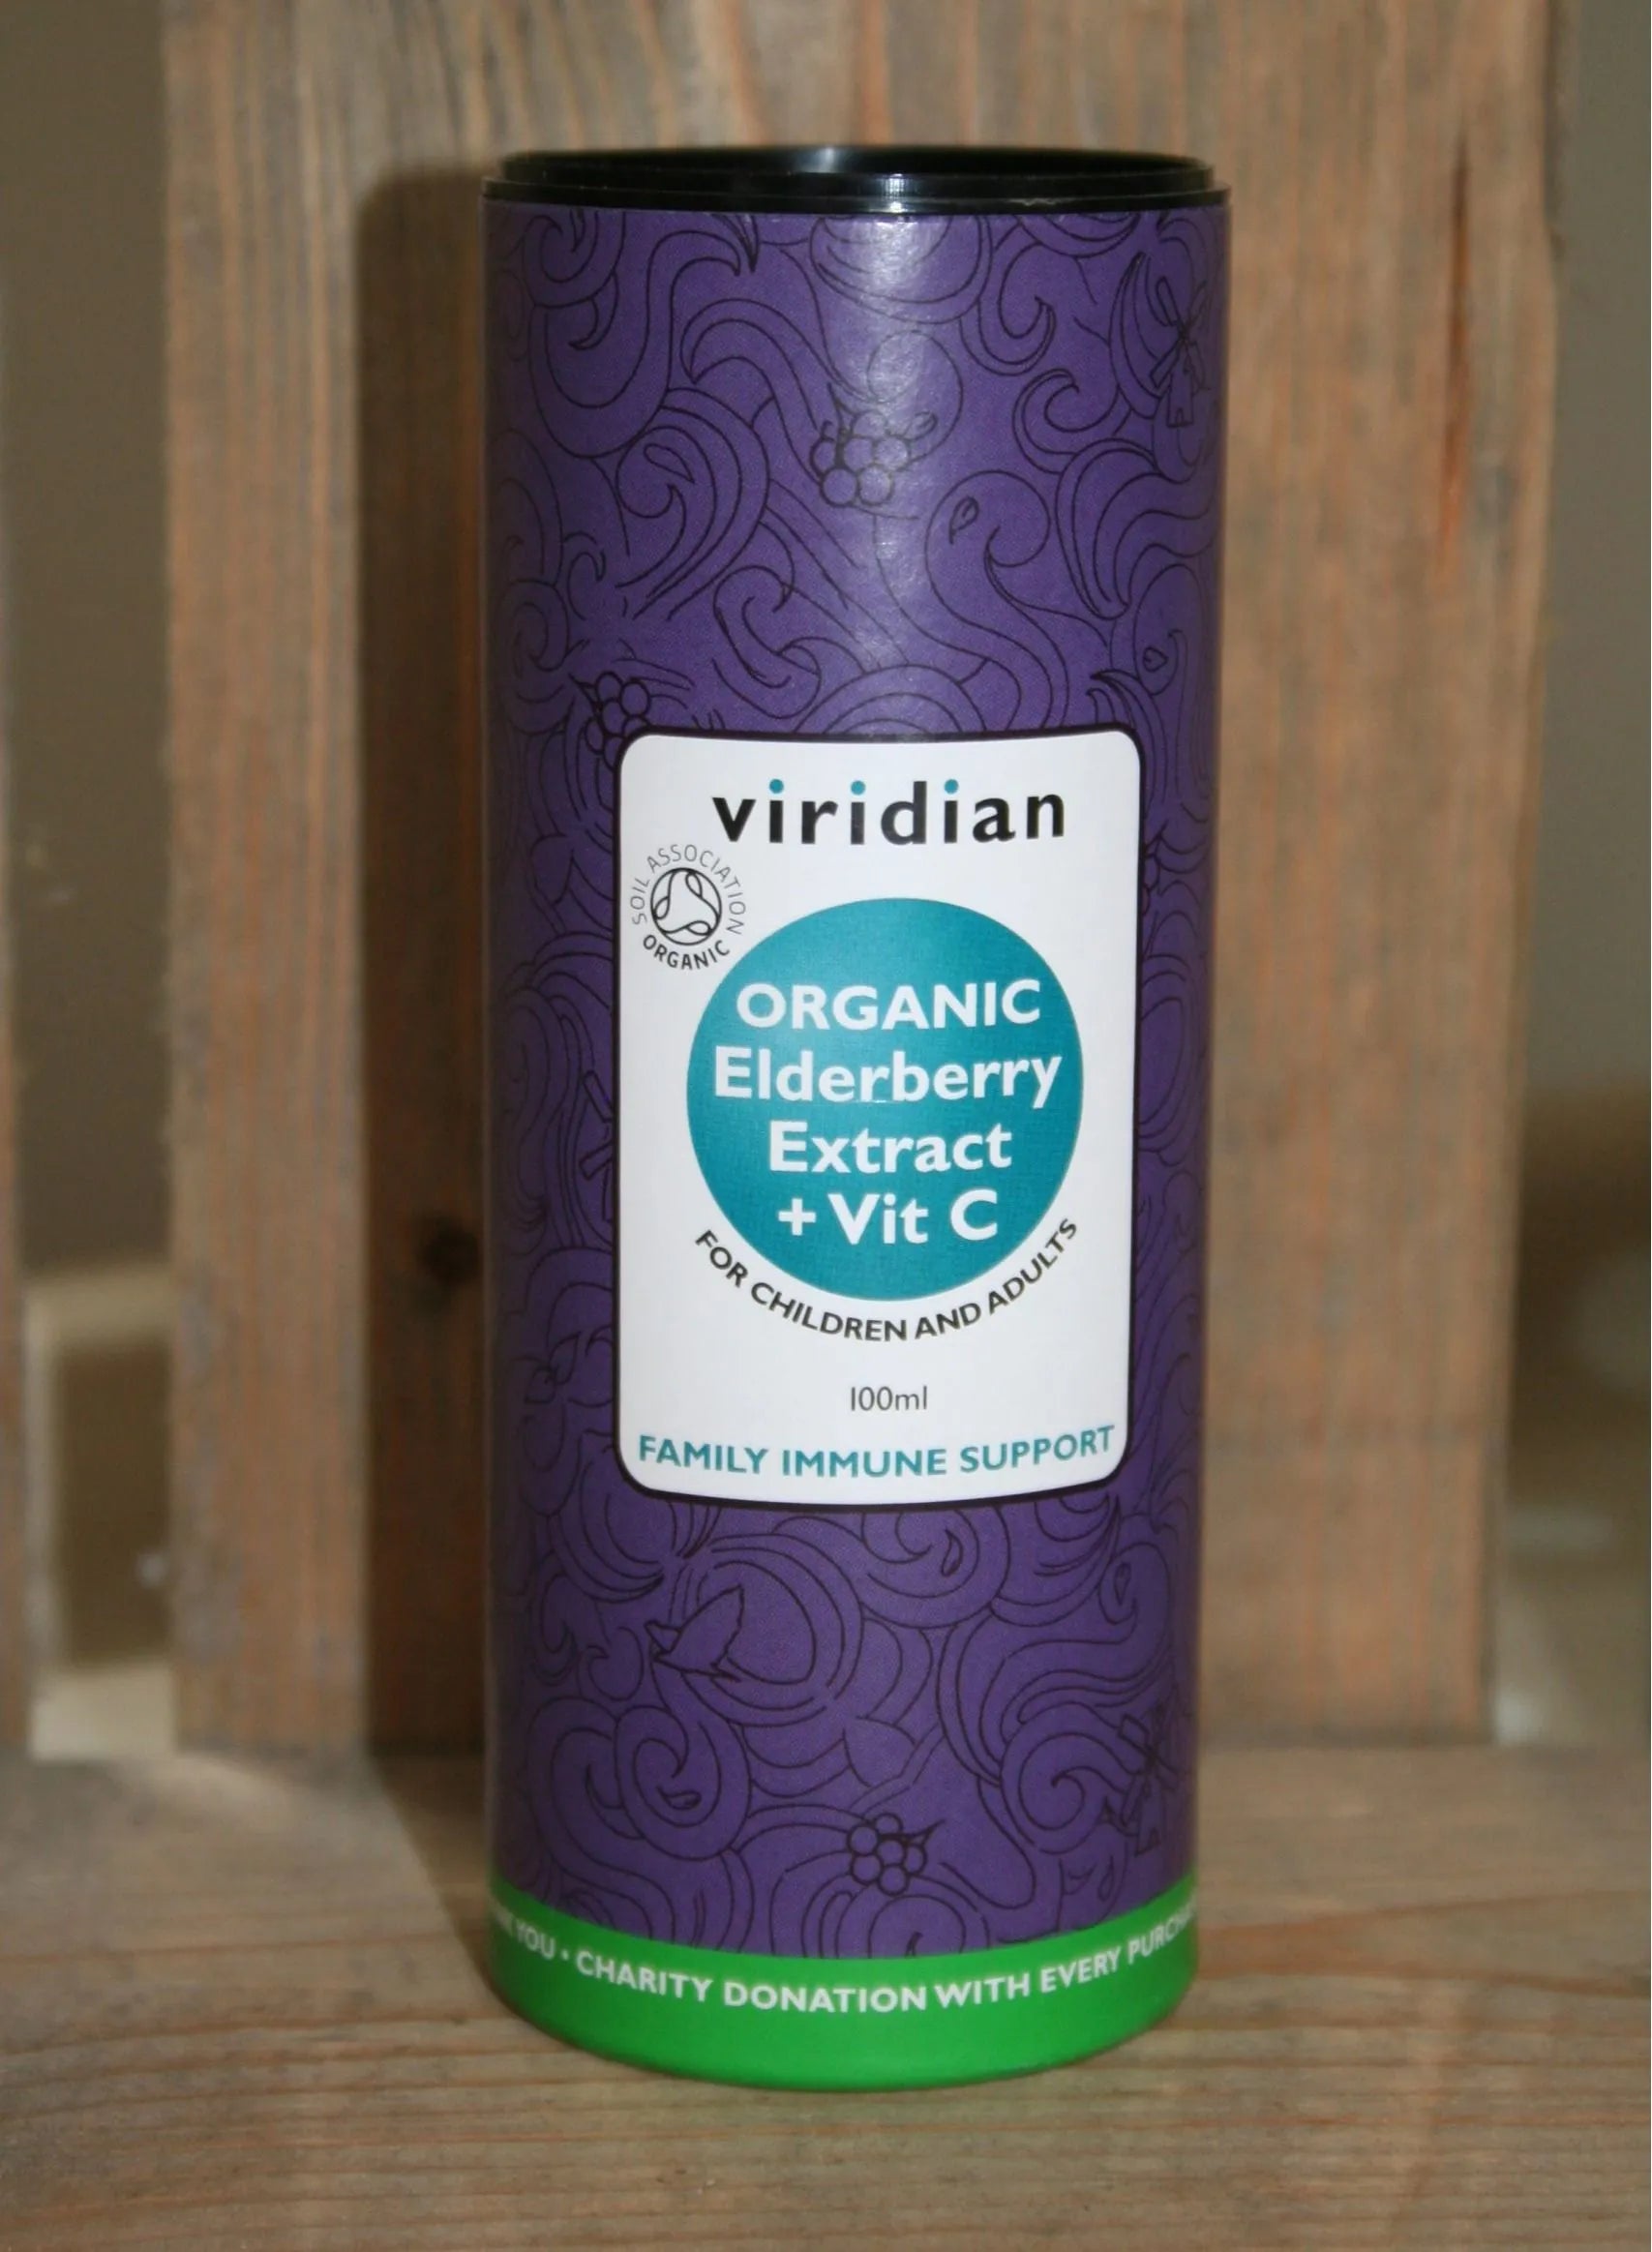 Viridian Organic Elderberry Extract Elixir